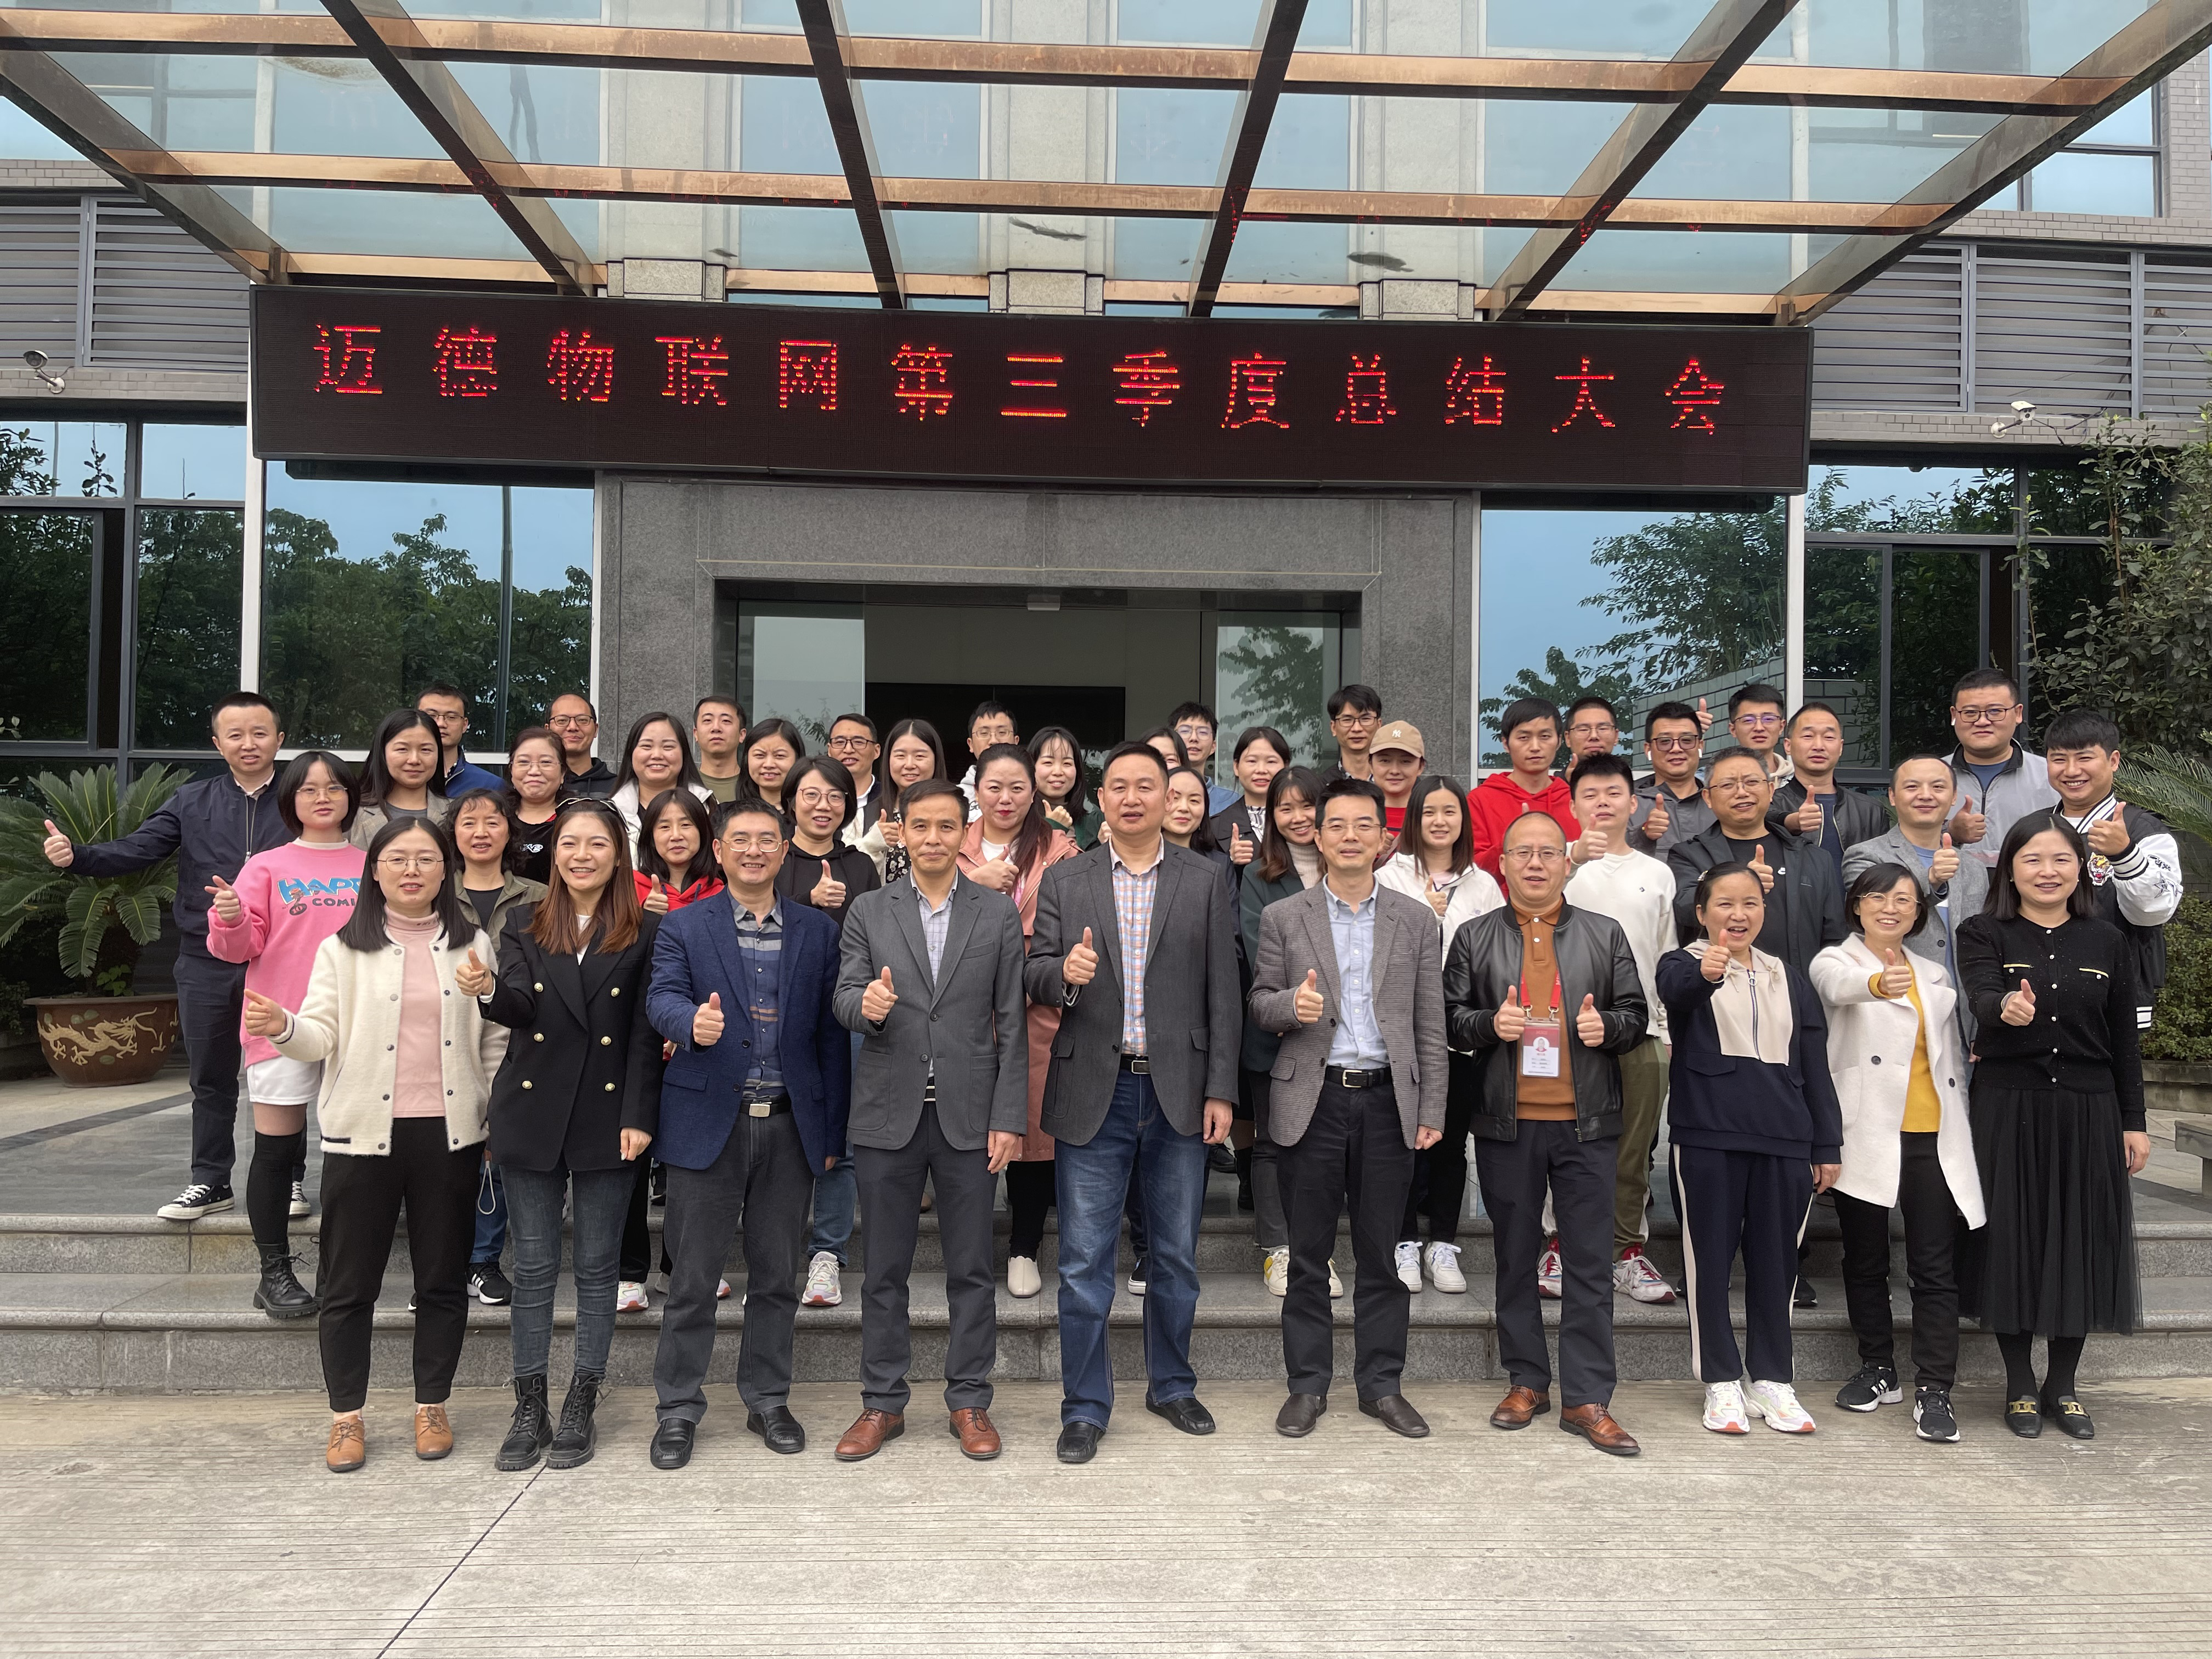 Calorose congratulazioni alla riunione riepilogativa del terzo trimestre della società Chengdu Mind tenutasi con successo